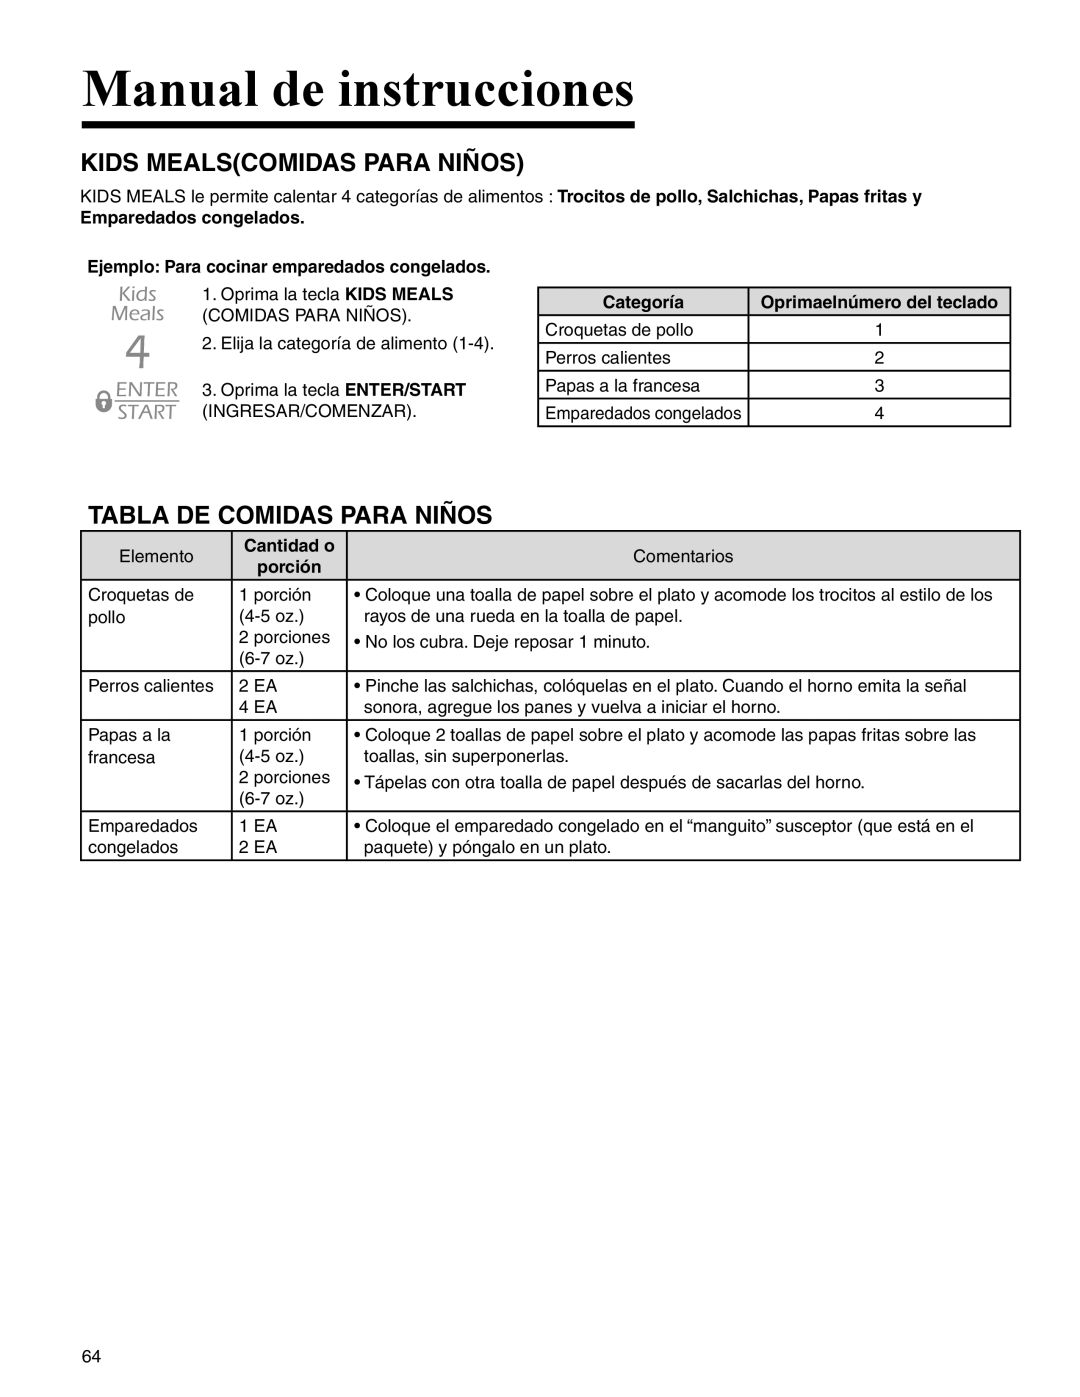 Maytag UMC5200 BAB/W/S Kids Mealscomidas Para Niños, Tabla De Comidas Para Niños, Manual de instrucciones, Categoría 